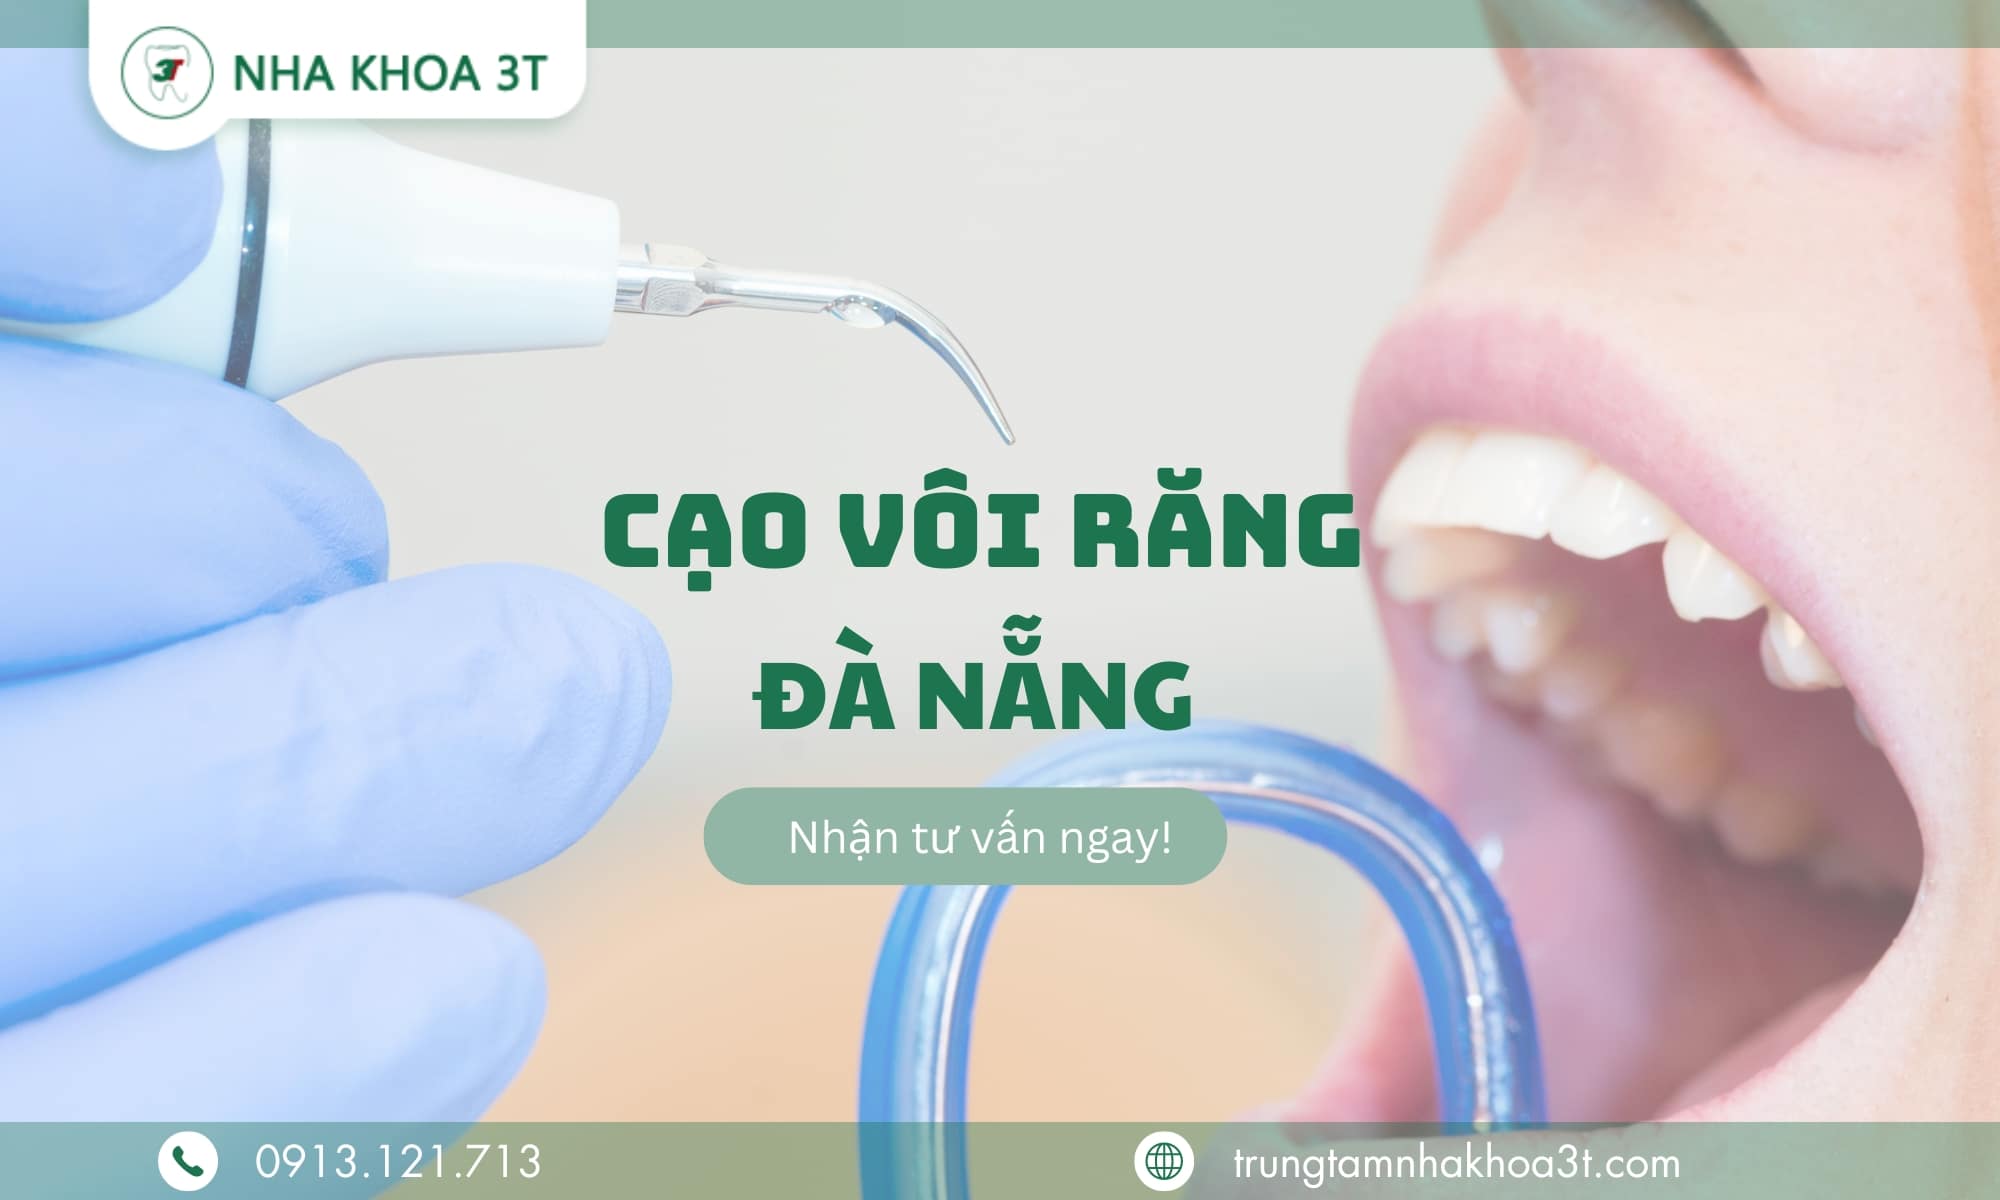 Tìm hiểu về dịch vụ cạo vôi răng tại Đà Nẵng